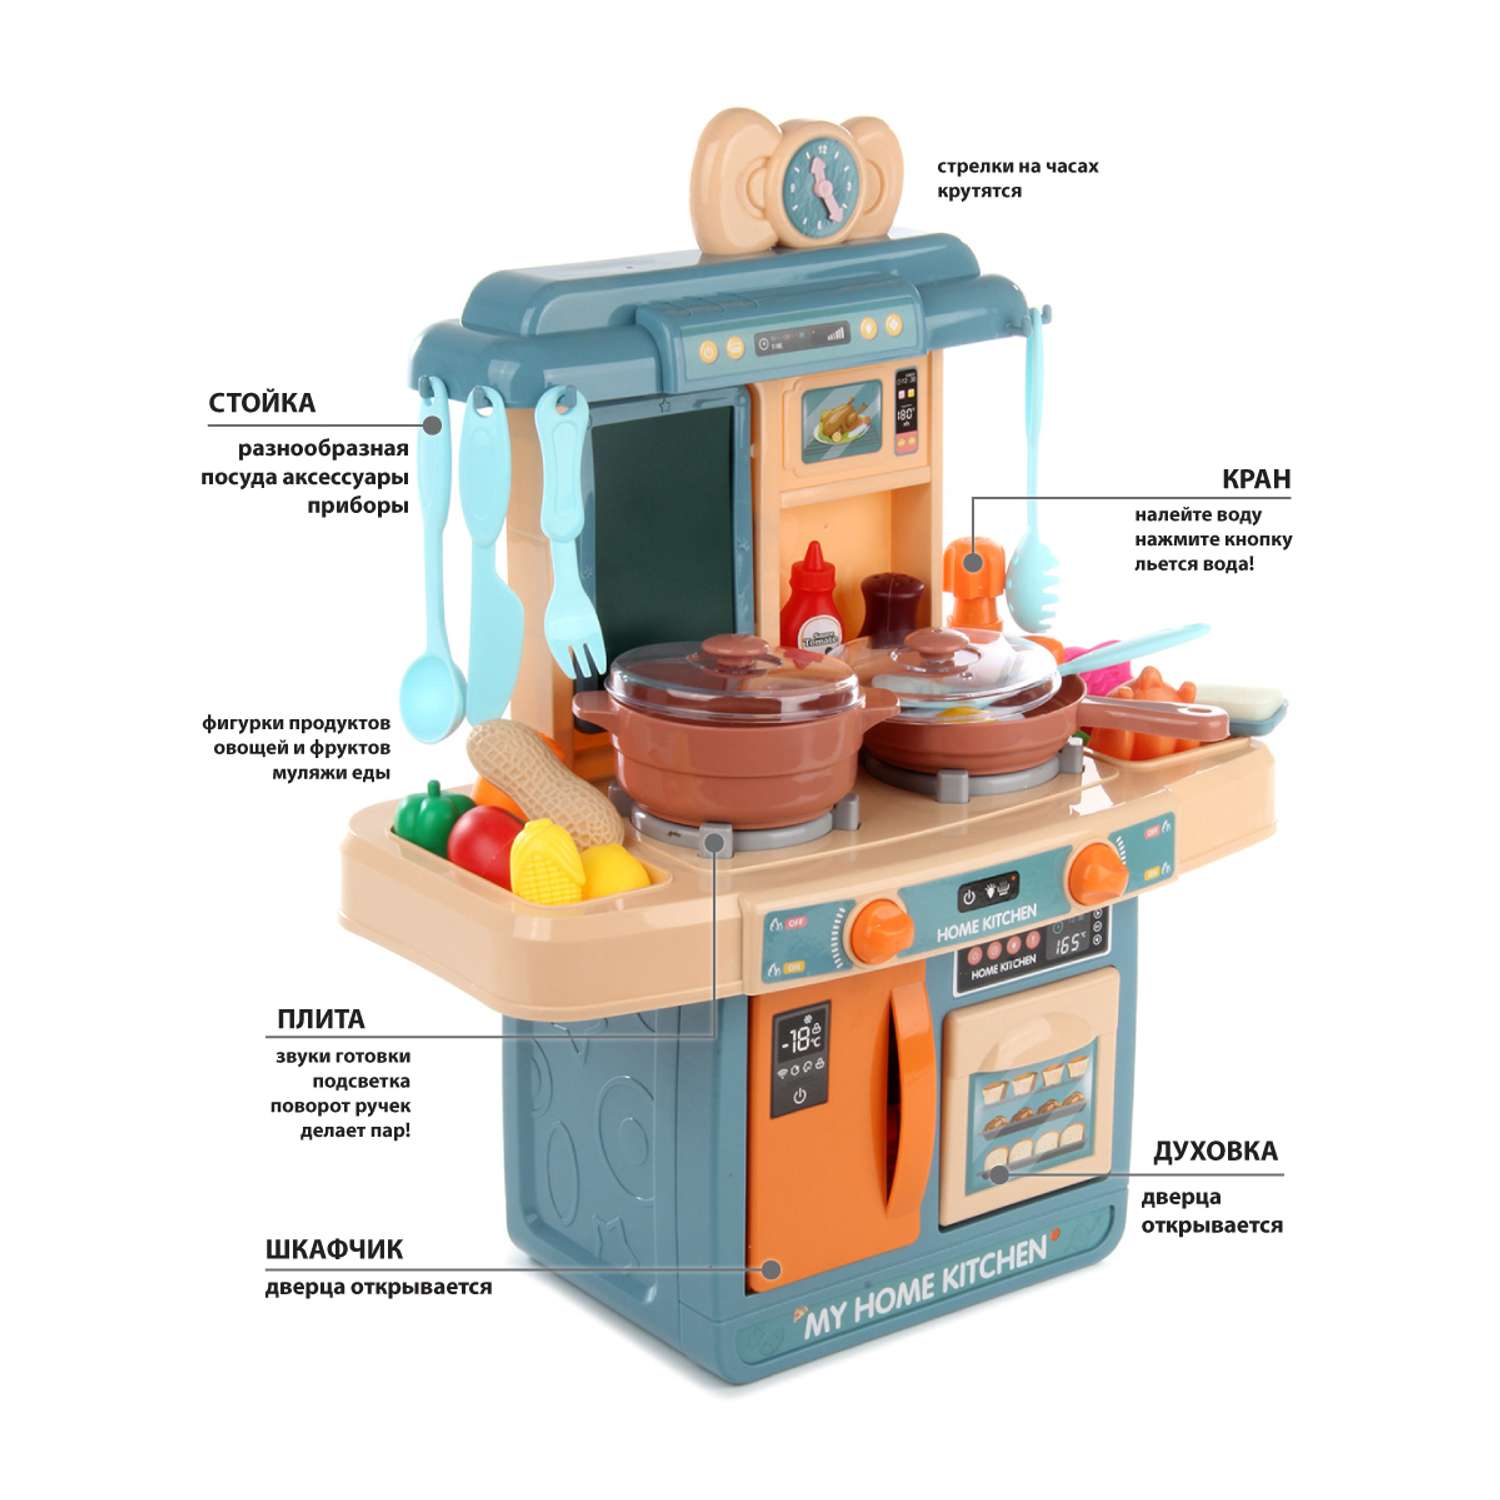 Детская кухня Veld Co Звуки свет вода часы плита духовка кухонная посуда игрушечные продукты 39 предметов - фото 2